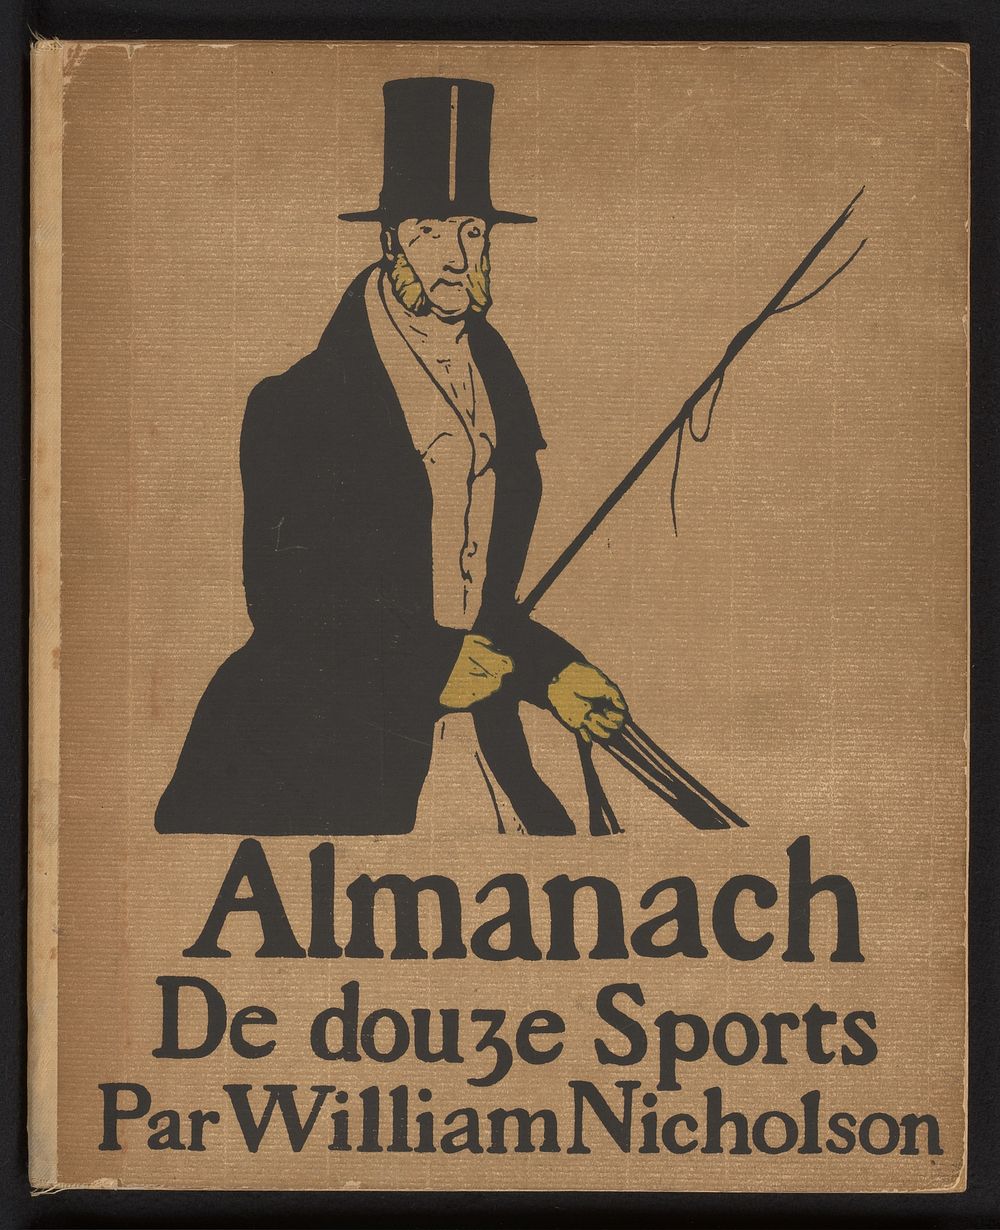 Almanach de Douze Sports (1898) by William Nicholson and Société Française d éditions d art